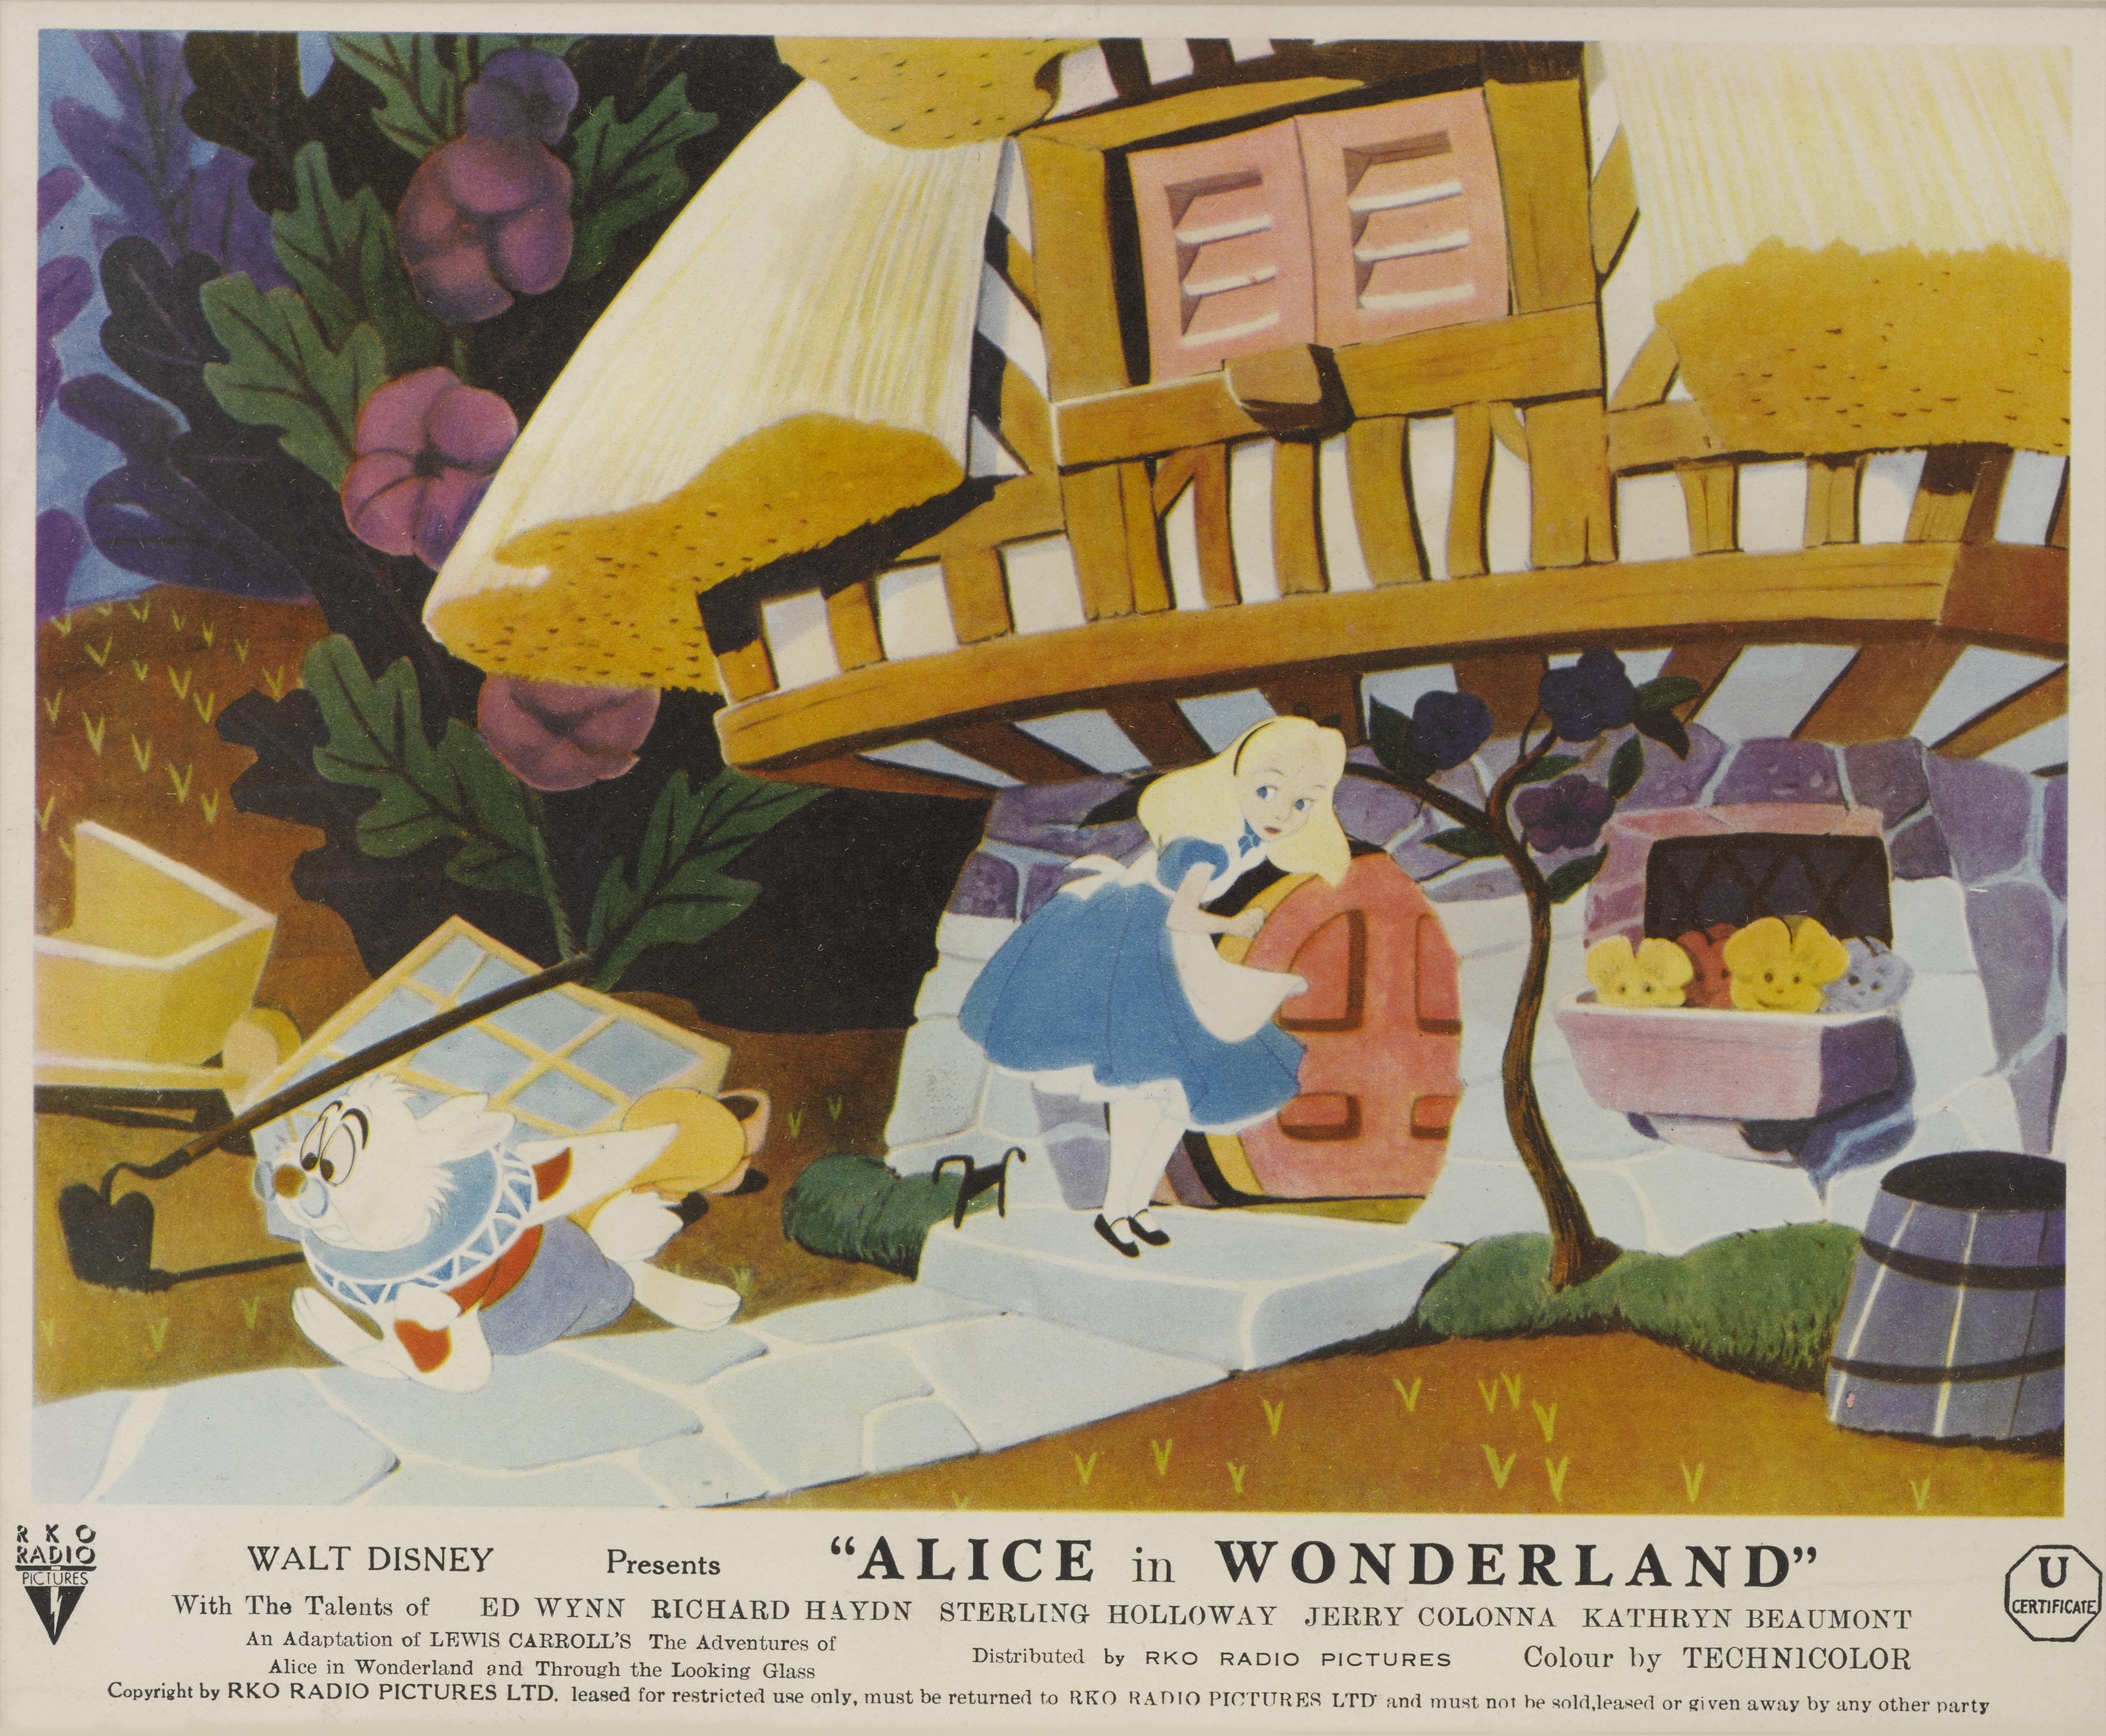 Original britische gerahmte Vorderseite des Hauses Karte.
Alice im Wunderland wurde 1951 von Walt Disney veröffentlicht und basiert auf den Alice-Büchern von Lewis Carroll. Es war der dreizehnte Zeichentrickfilm, den Disney produzierte. Walt Disney